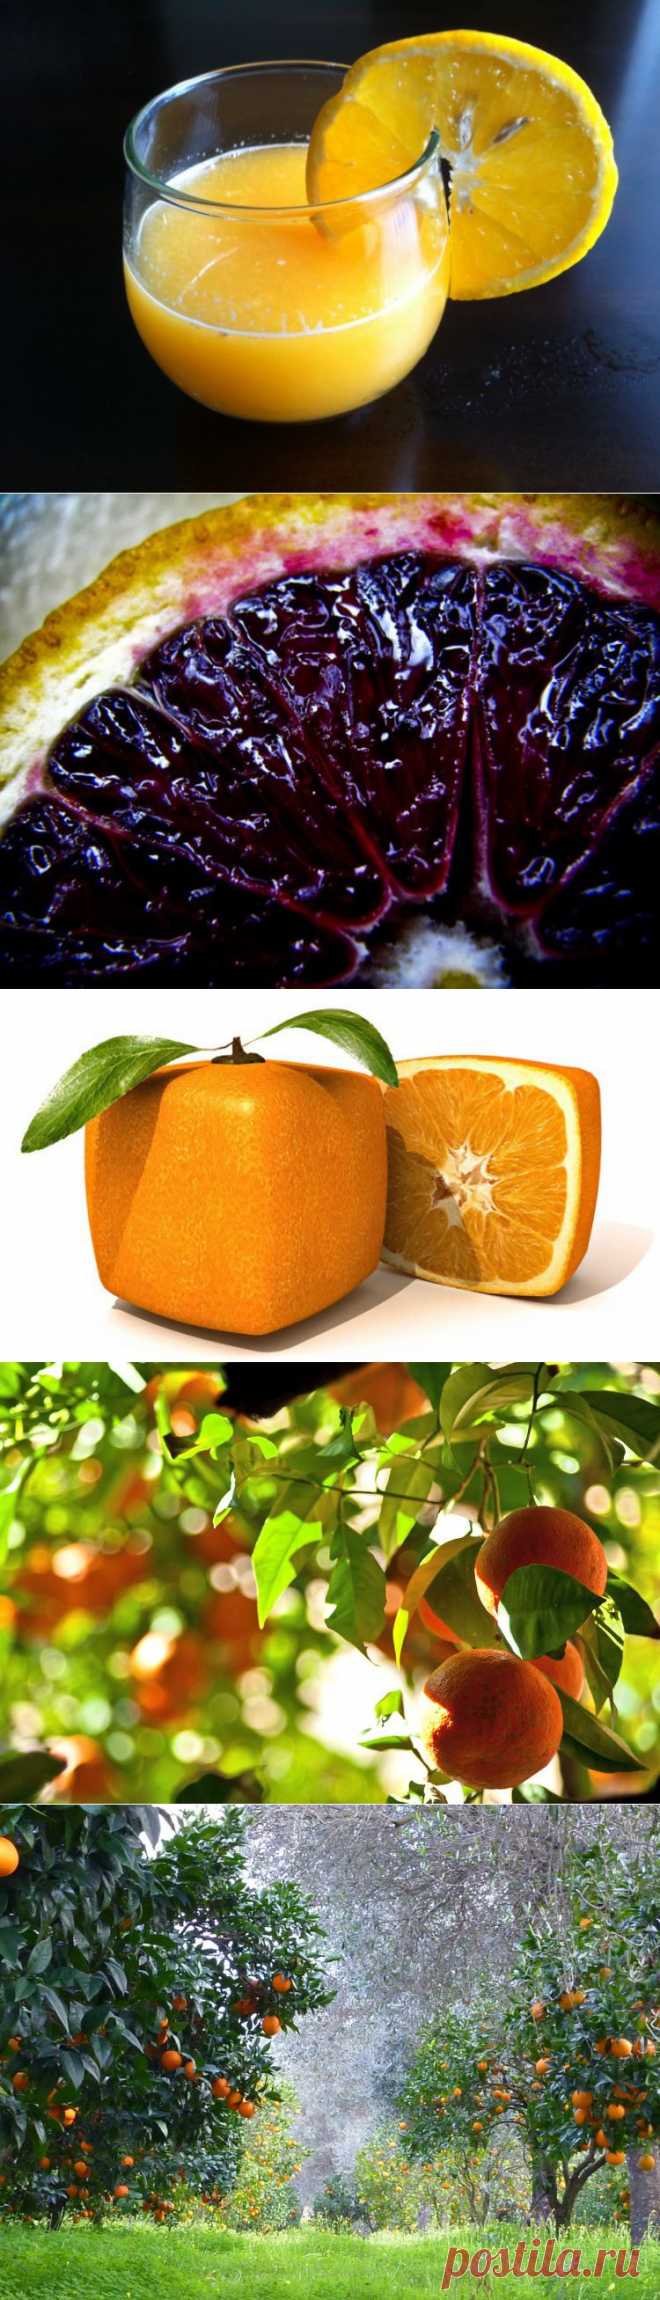 Малоизвестные факты об апельсинах - Наука и жизнь